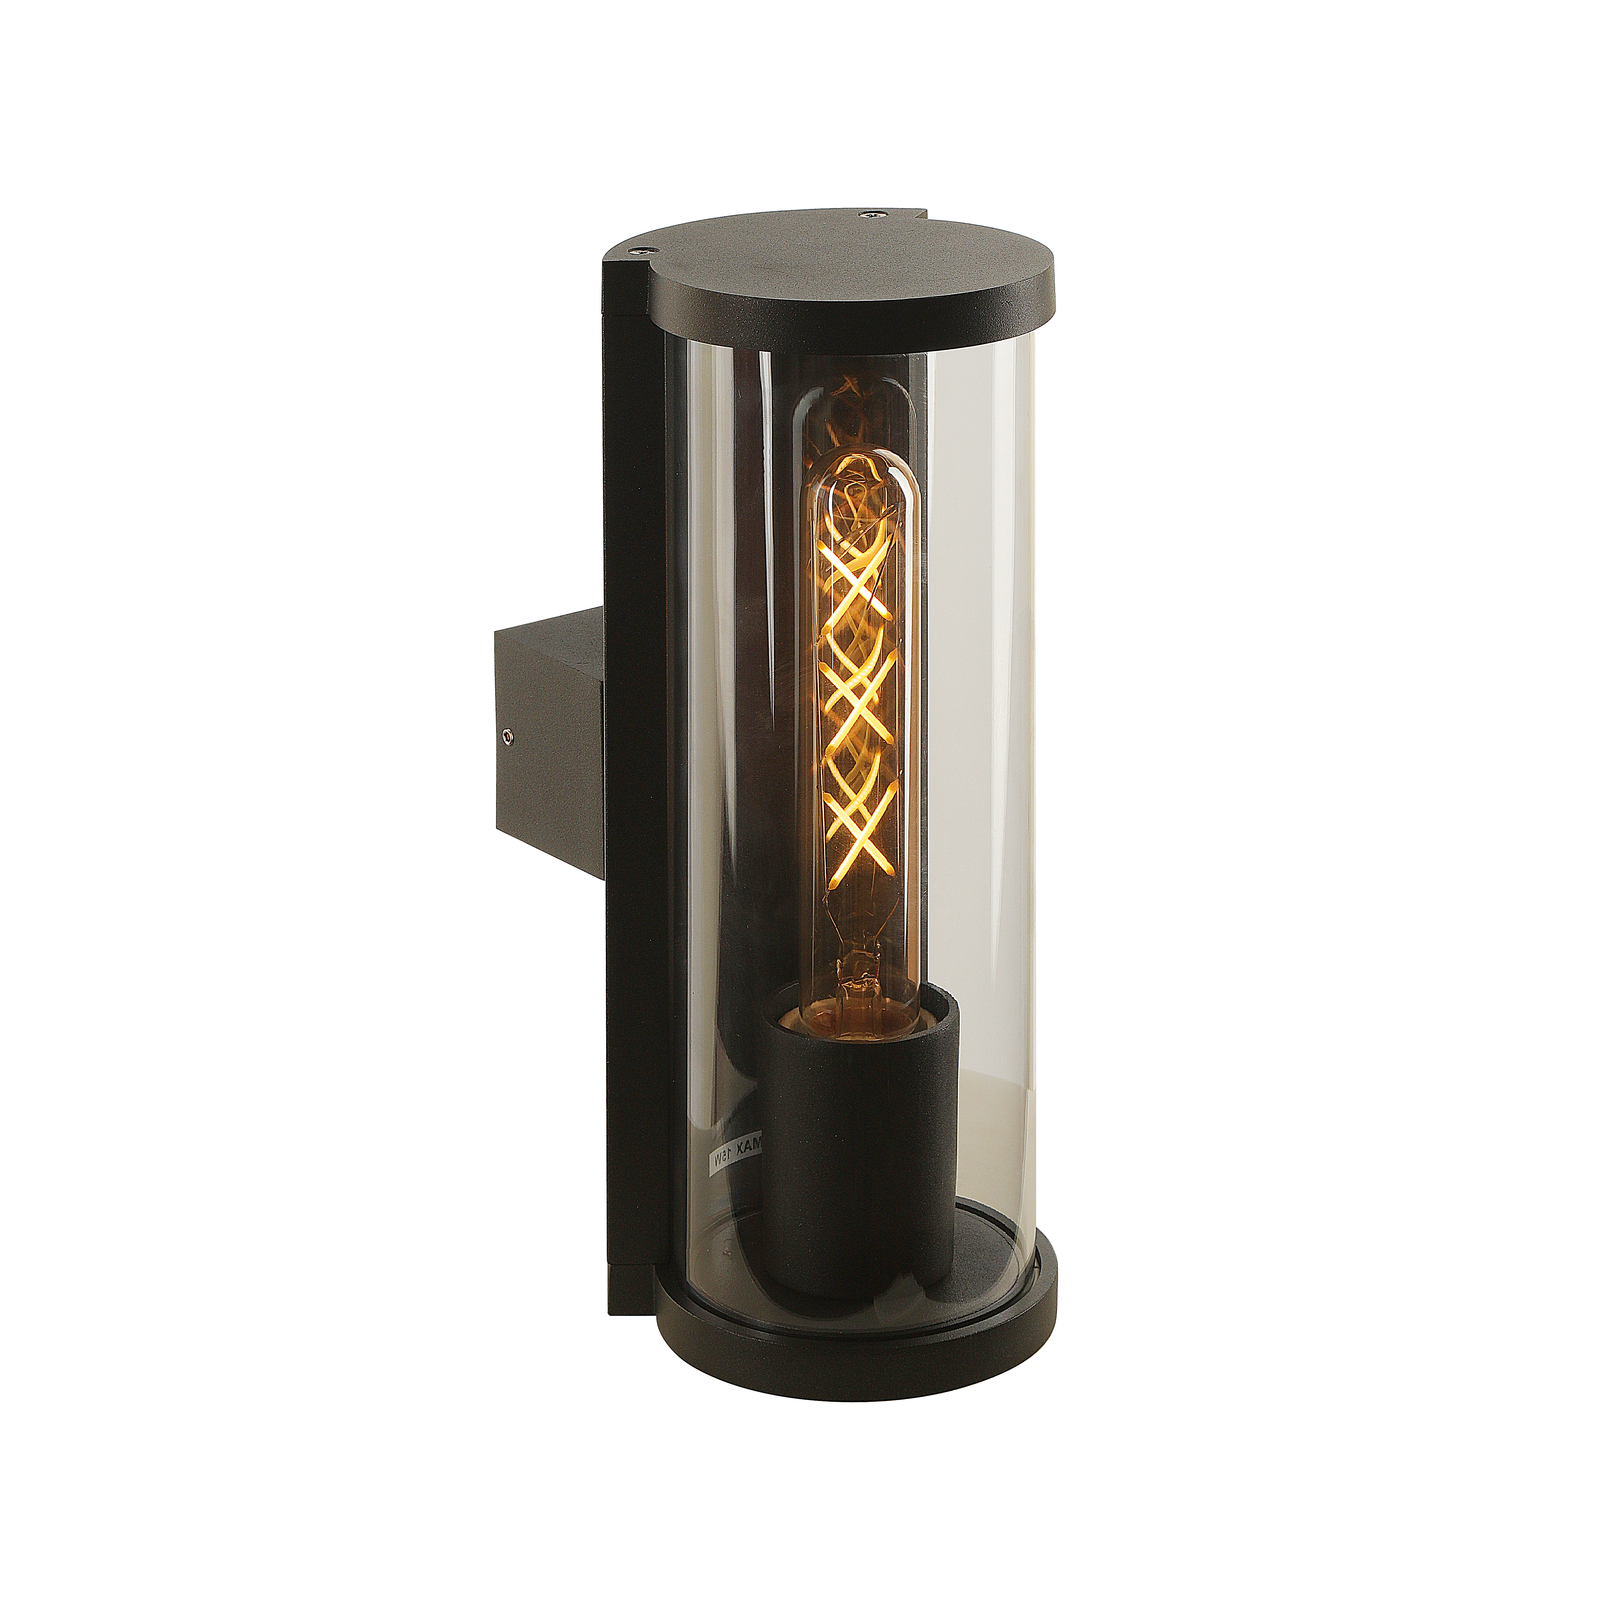 Vanjska zidna svjetiljka Lucande Zanta, visina 28,2 cm, IP65, crna